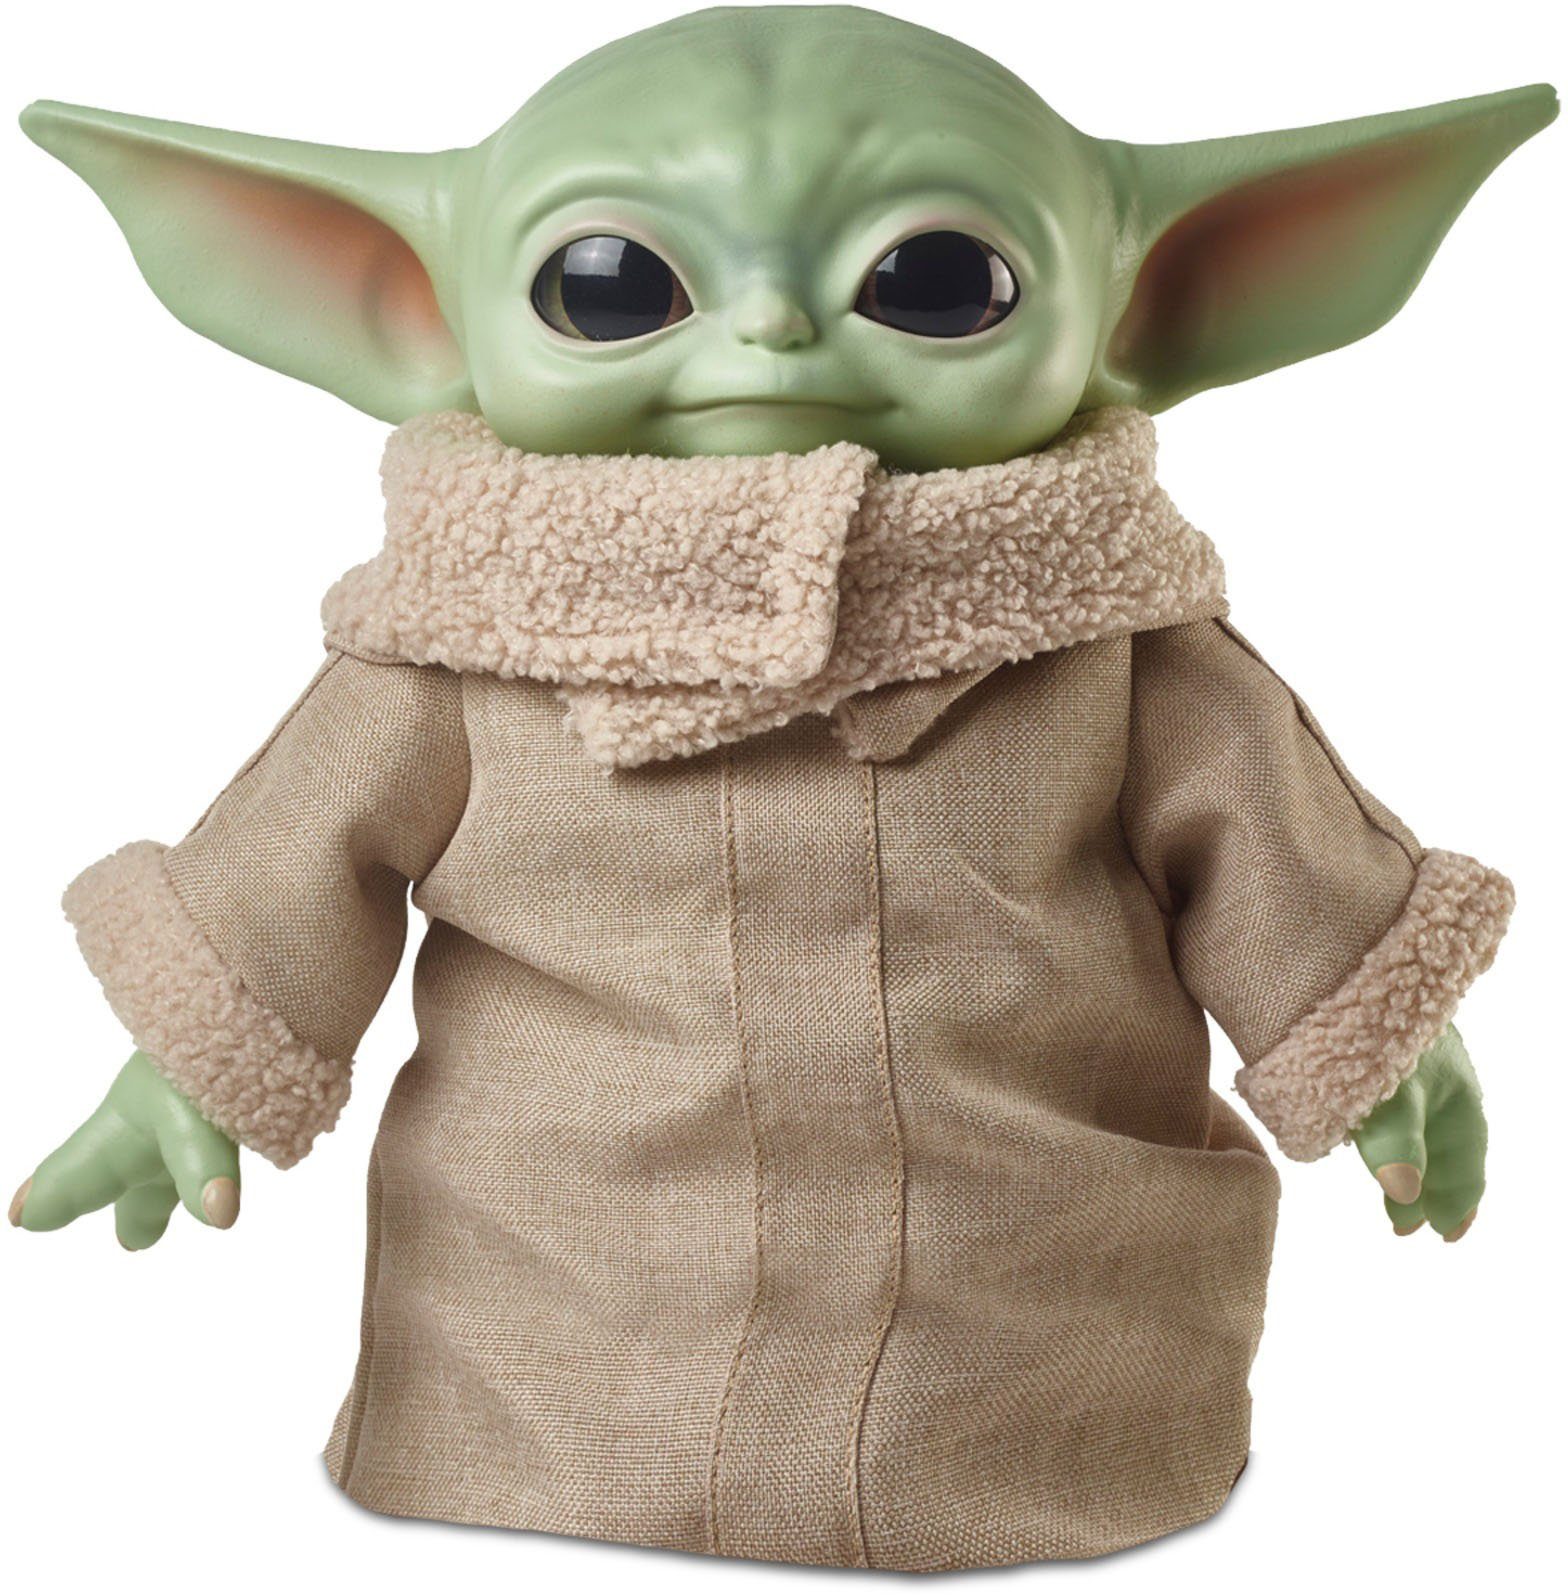 Mattel® Plüschfigur Star Wars The Child, 28 cm, Yoda Spezies aus